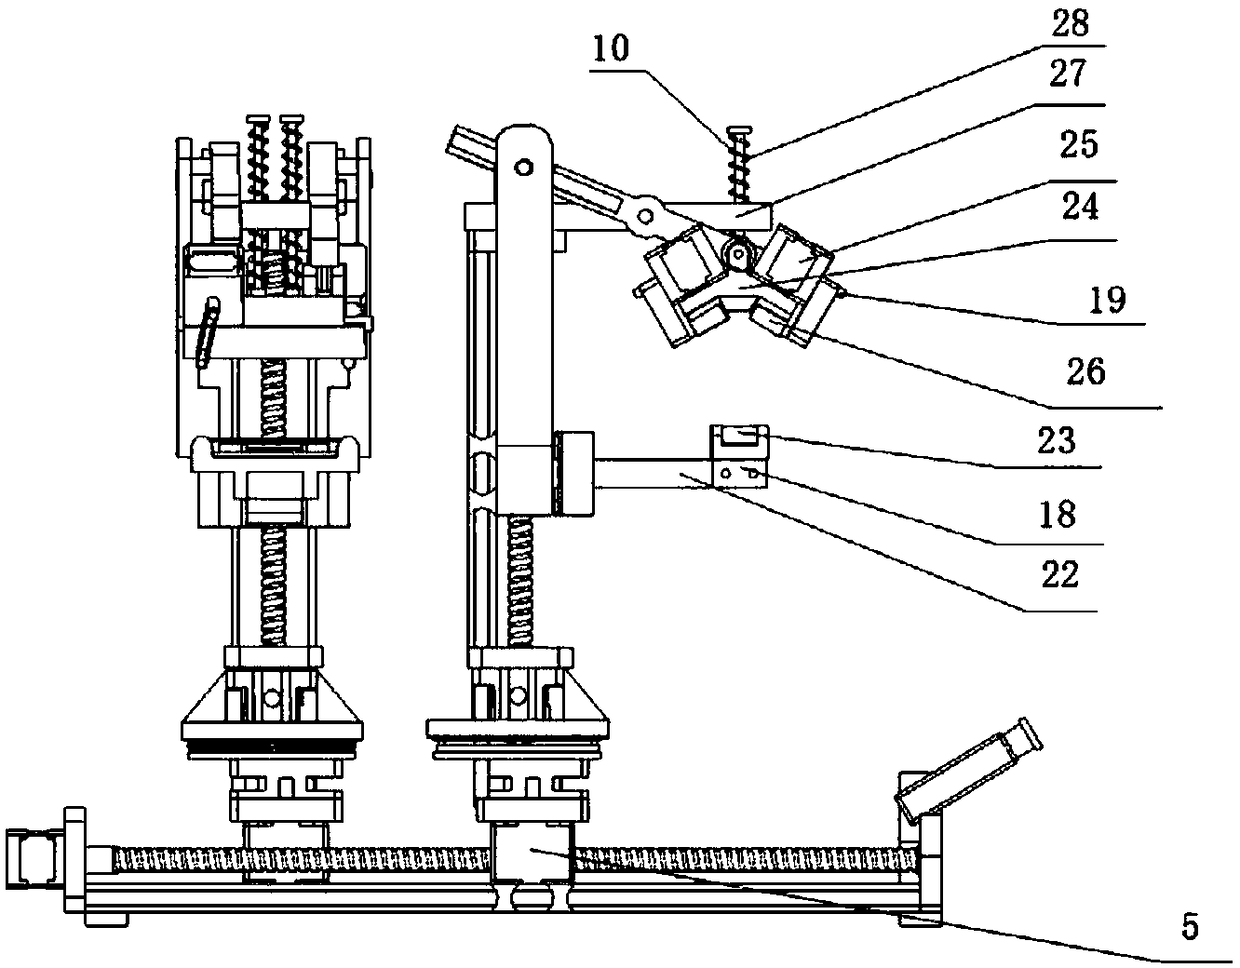 High-voltage transmission line inspection robot